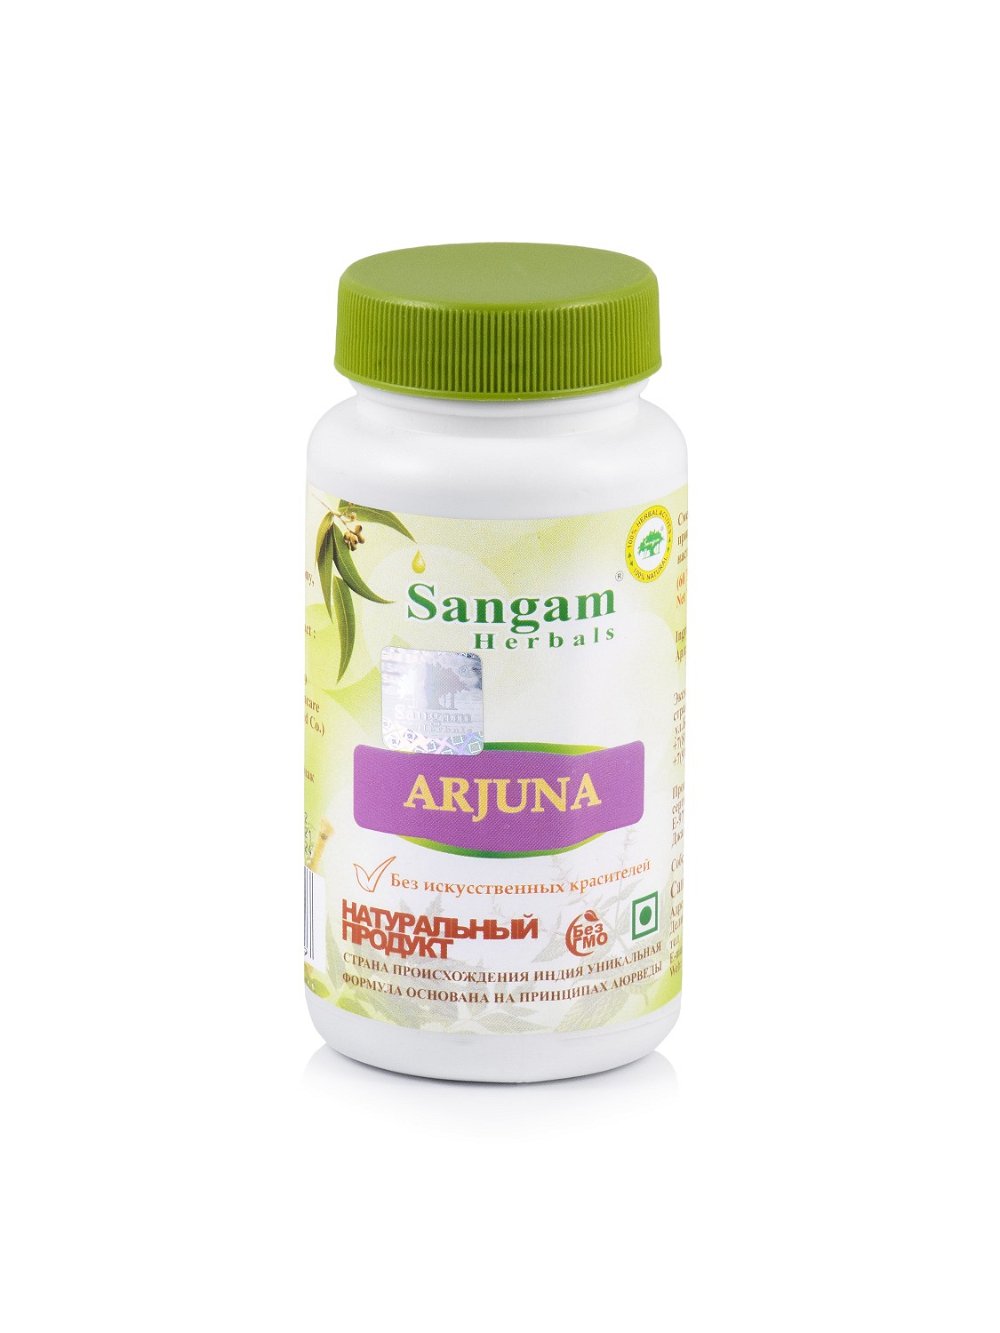 Арджуна Sangam Herbals (60 таблеток), 